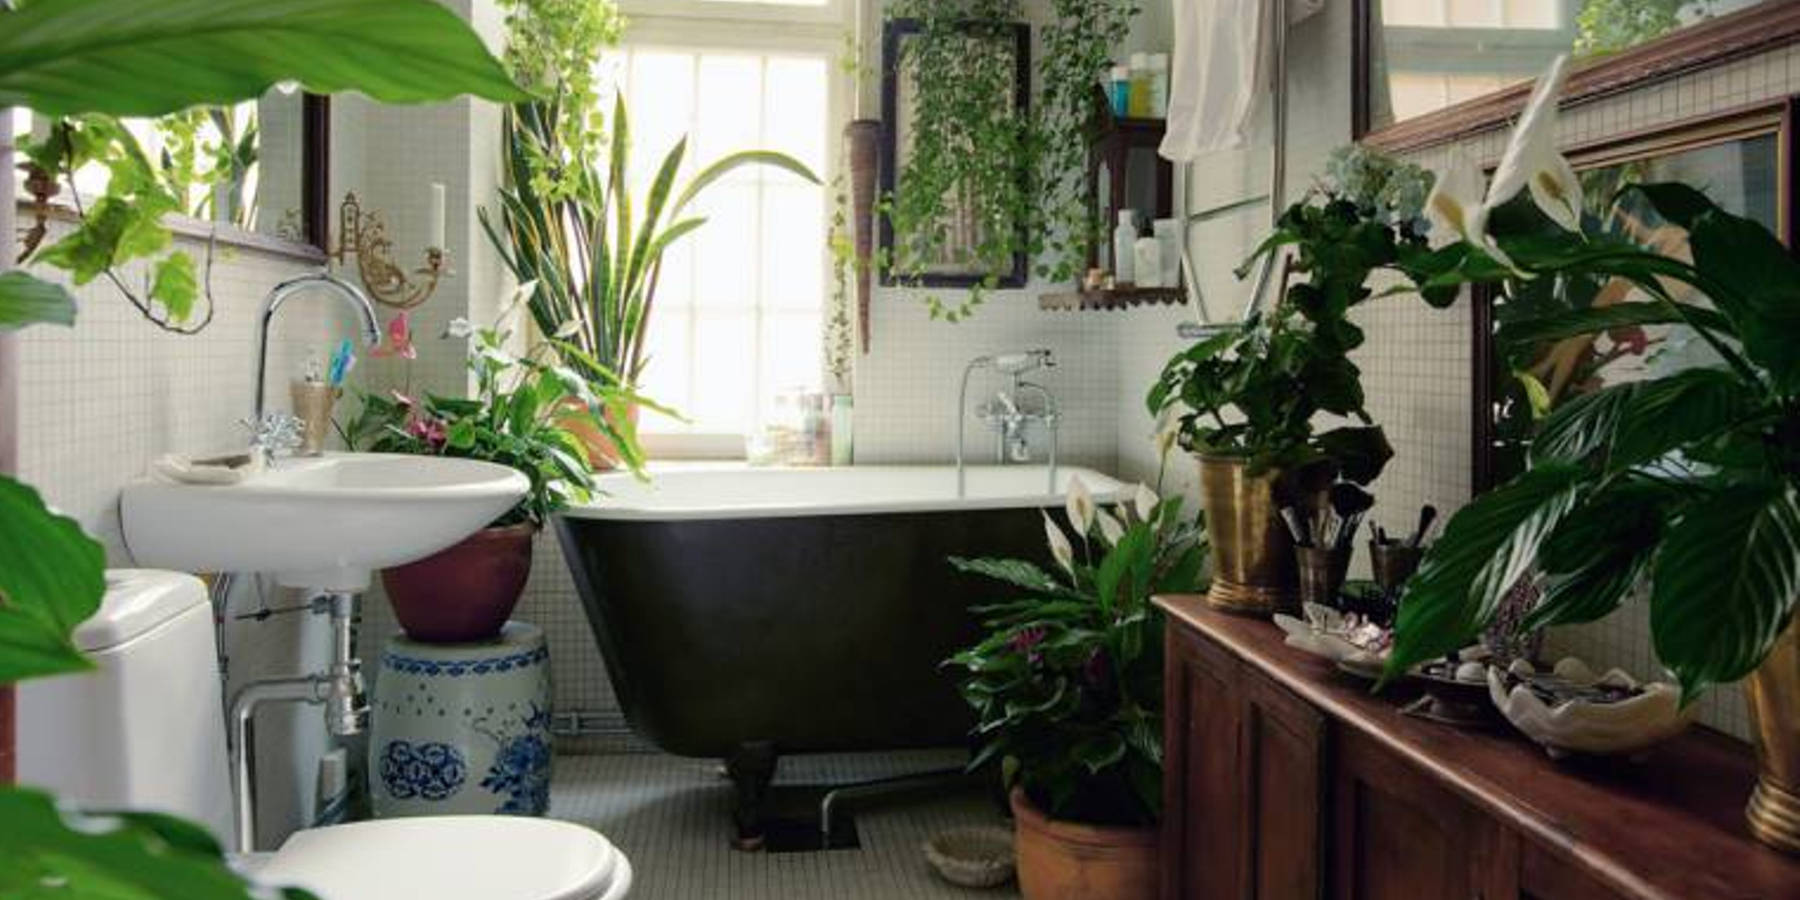 Comment adopter le style végétal dans votre salle de bain ?